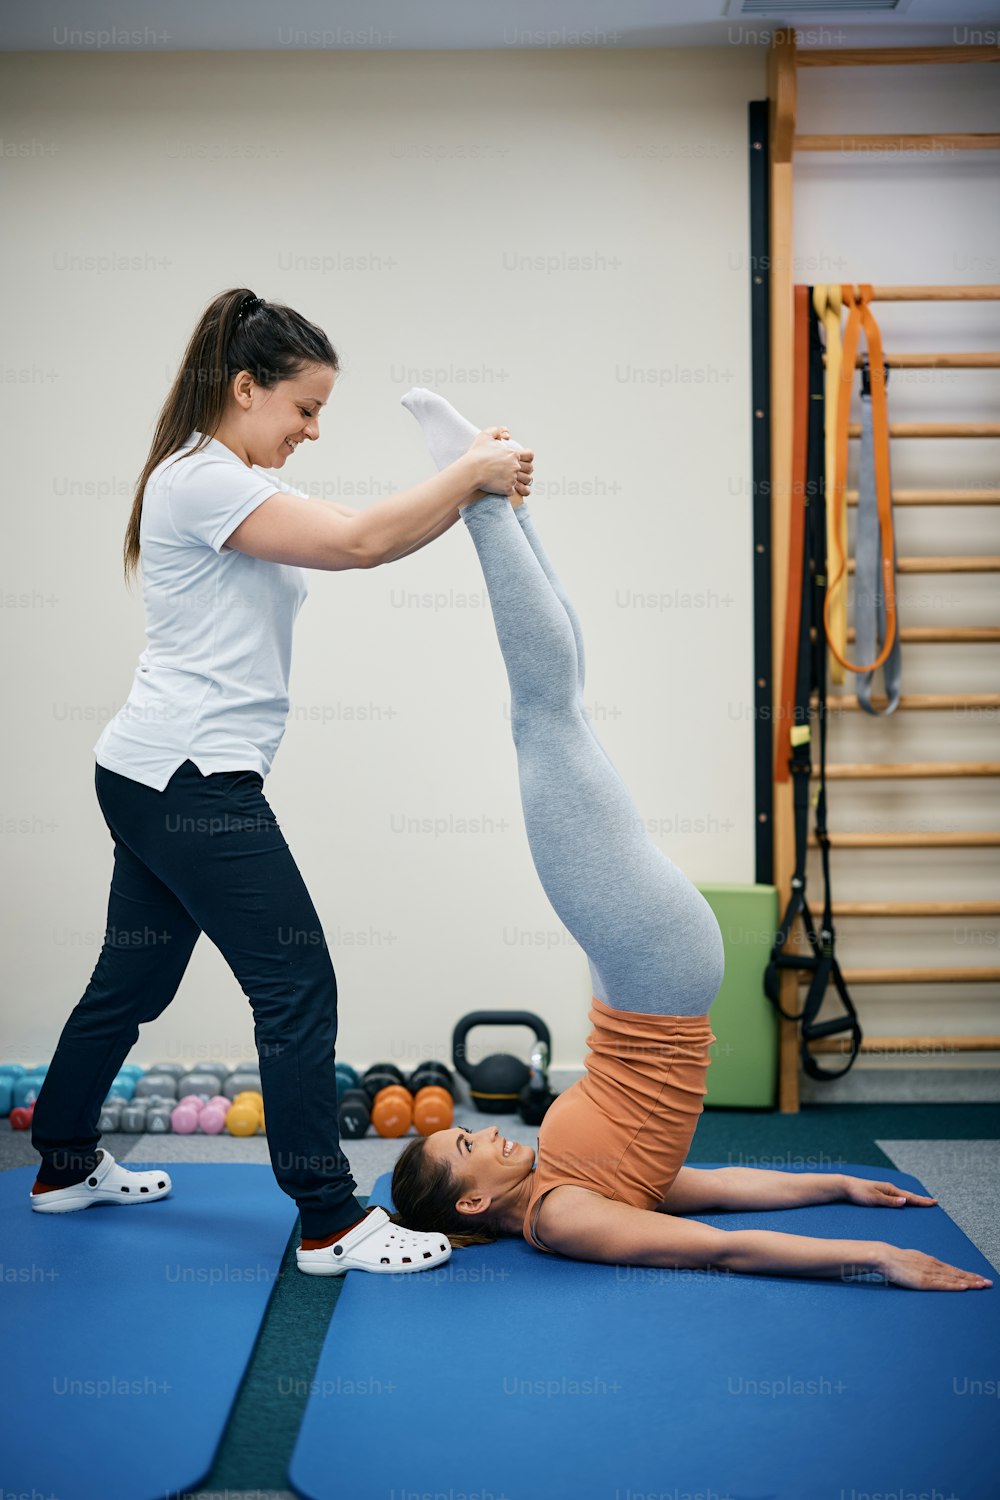 Fisioterapeuta feliz que ayuda a una mujer joven con ejercicio de hombro durante el tratamiento de fisioterapia en el gimnasio.